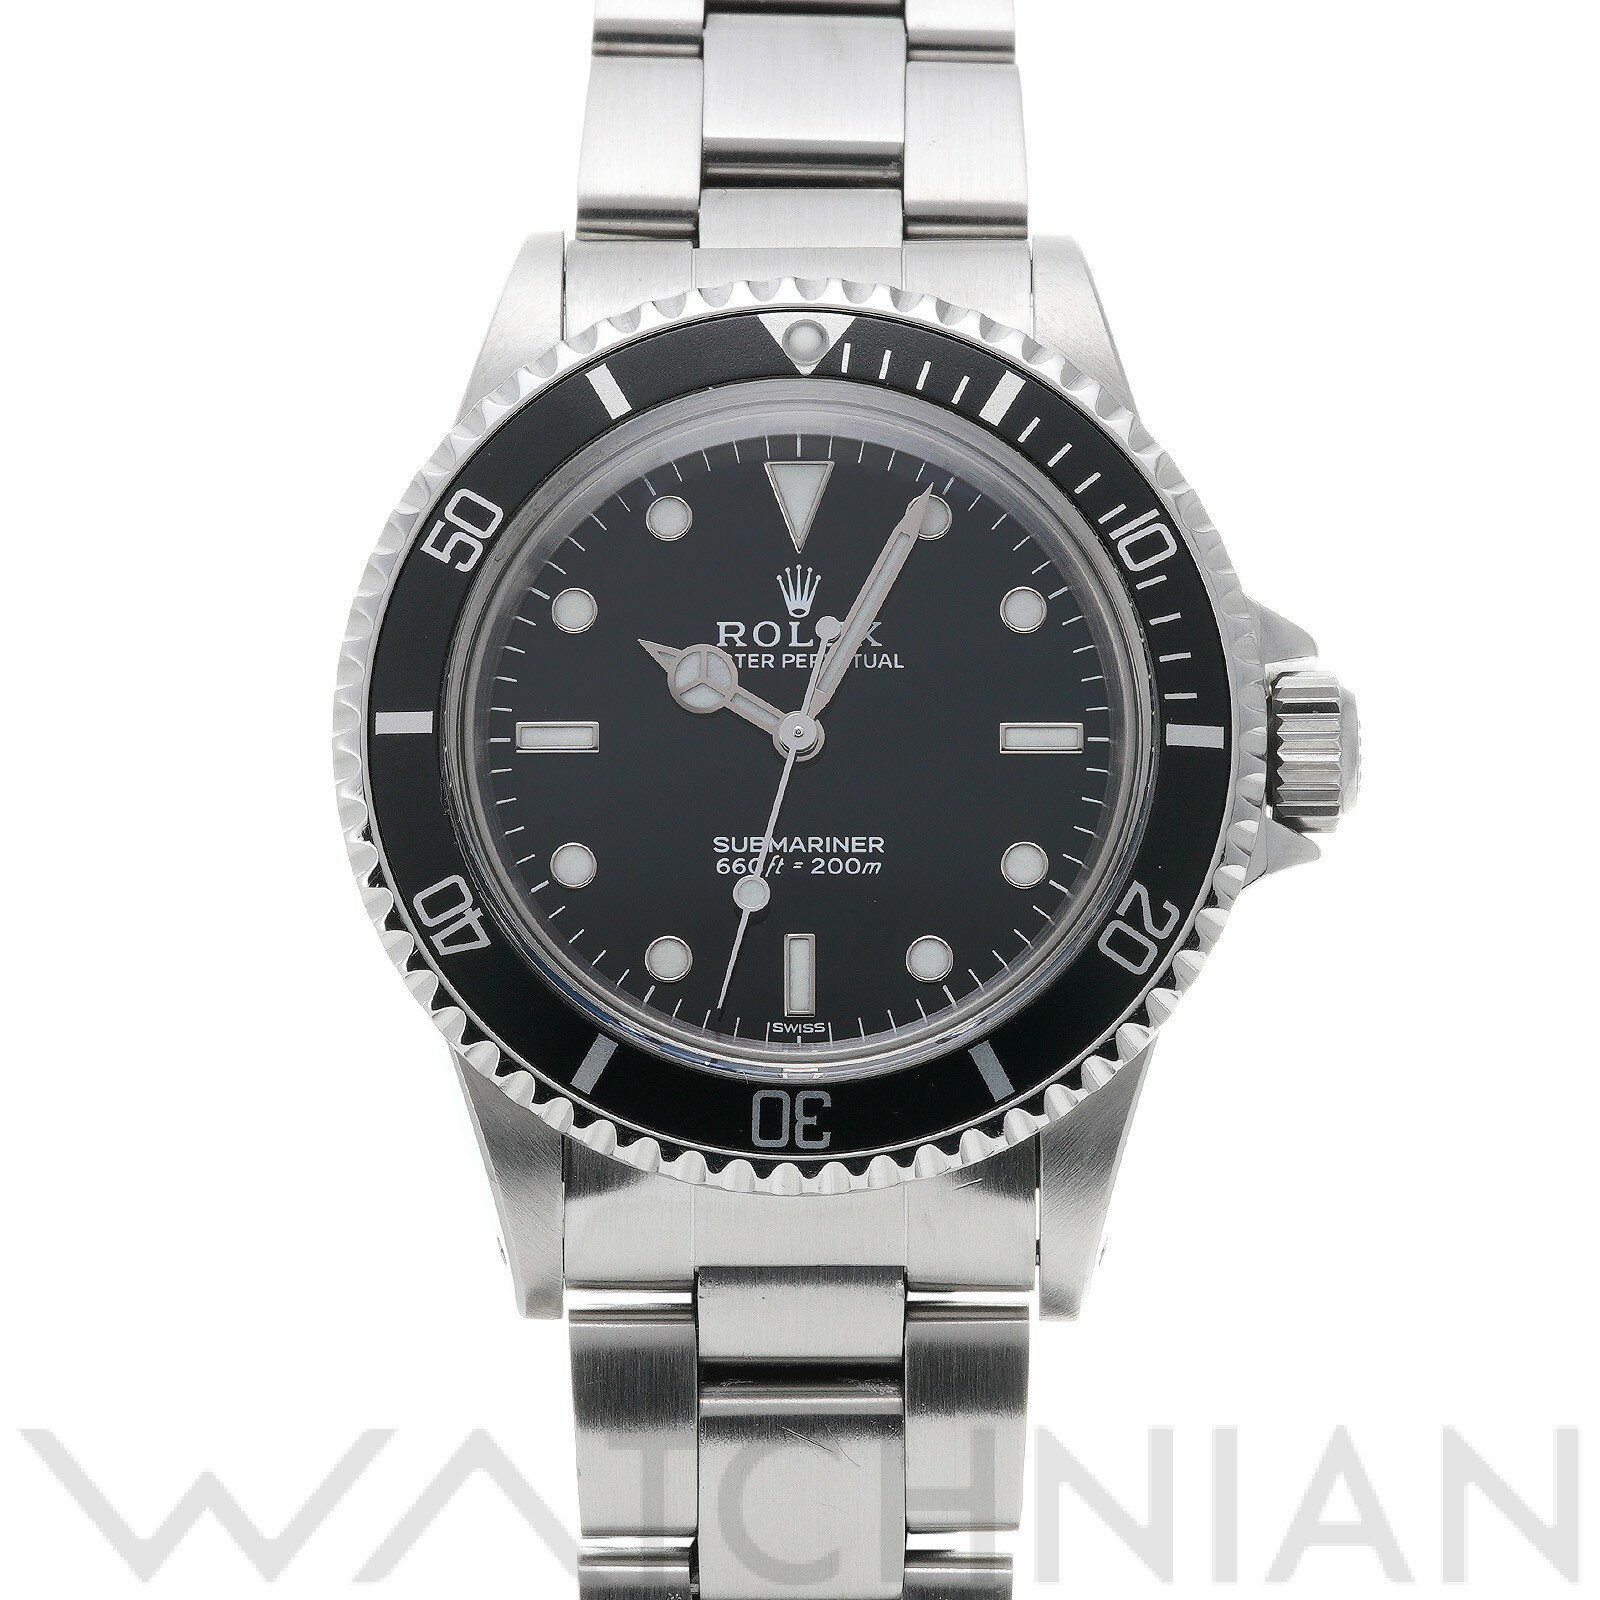 【ローン60回払い無金利】【中古】 ロレックス ROLEX サブマリーナ 5513 L番(1988年頃製造) ブラック メンズ 腕時計 黒 ブランド ロレックス腕時計 ウォッチ 高級腕時計